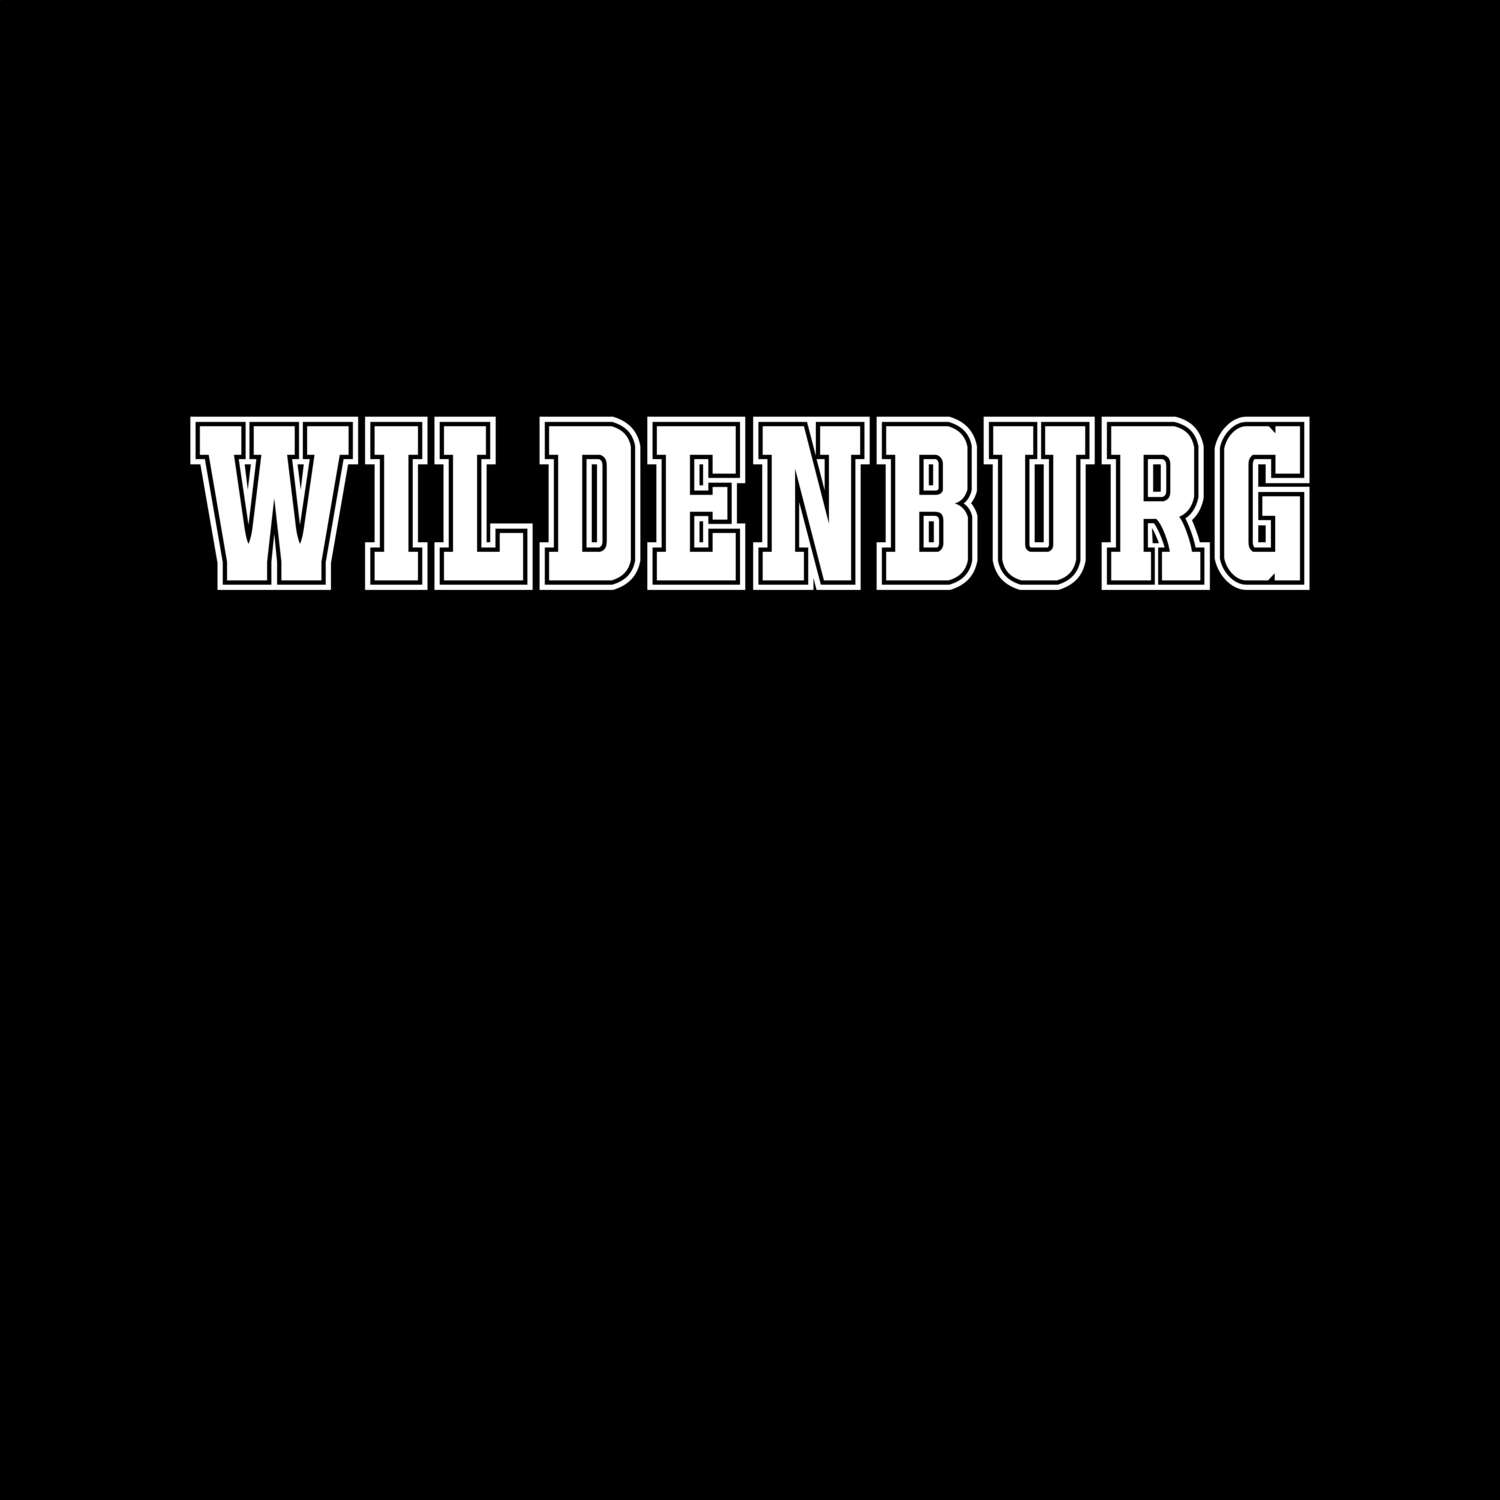 Wildenburg T-Shirt »Classic«